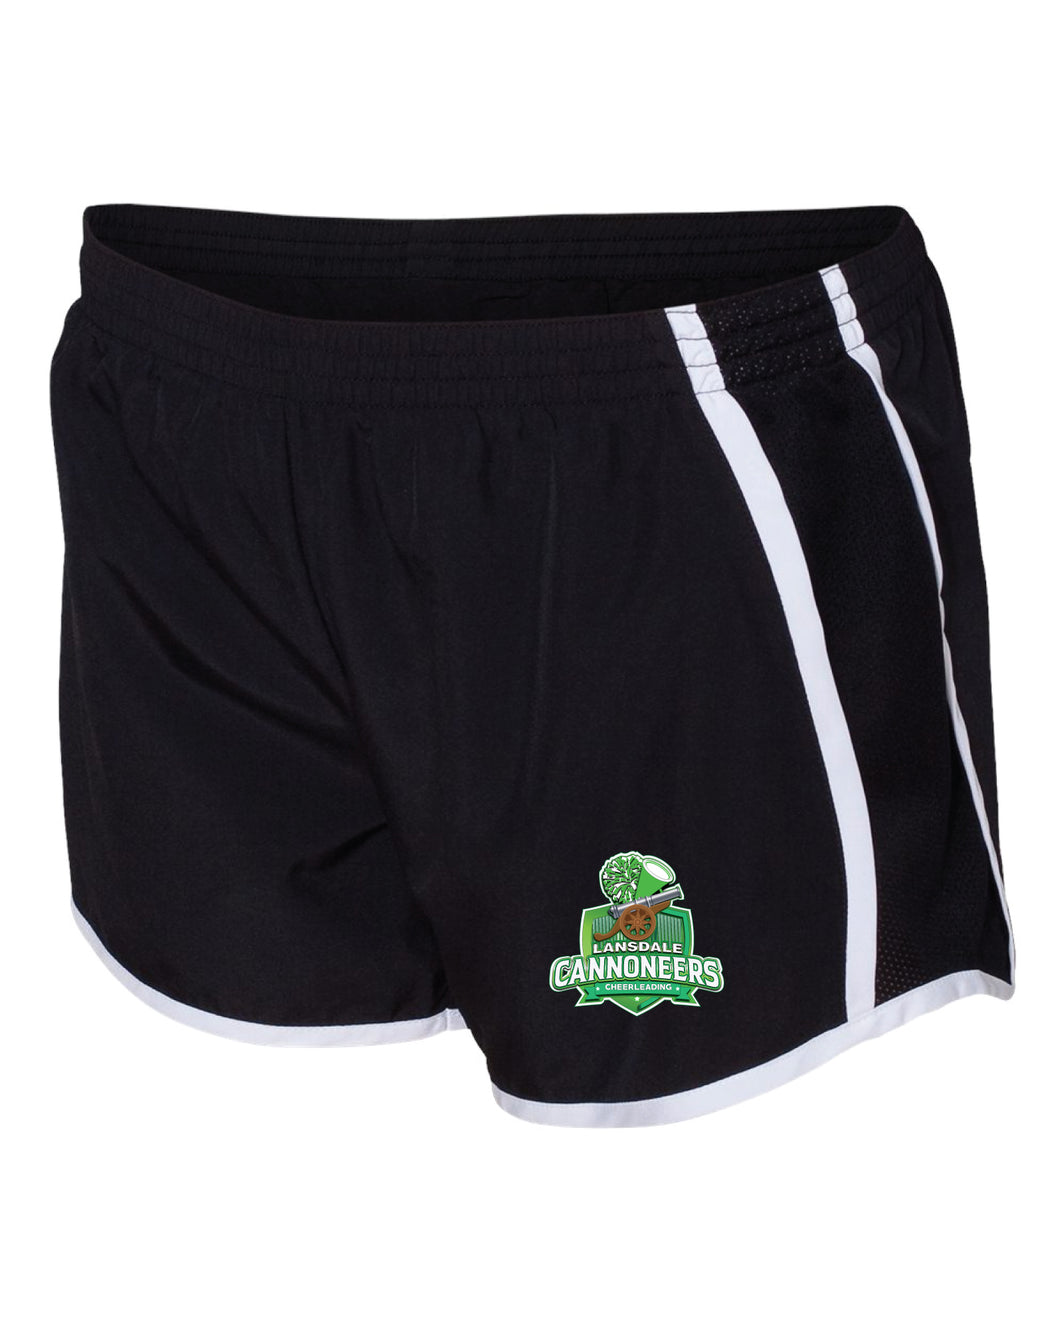 Cannoneers Cheer Athletic Shorts - Black - 5KounT2018